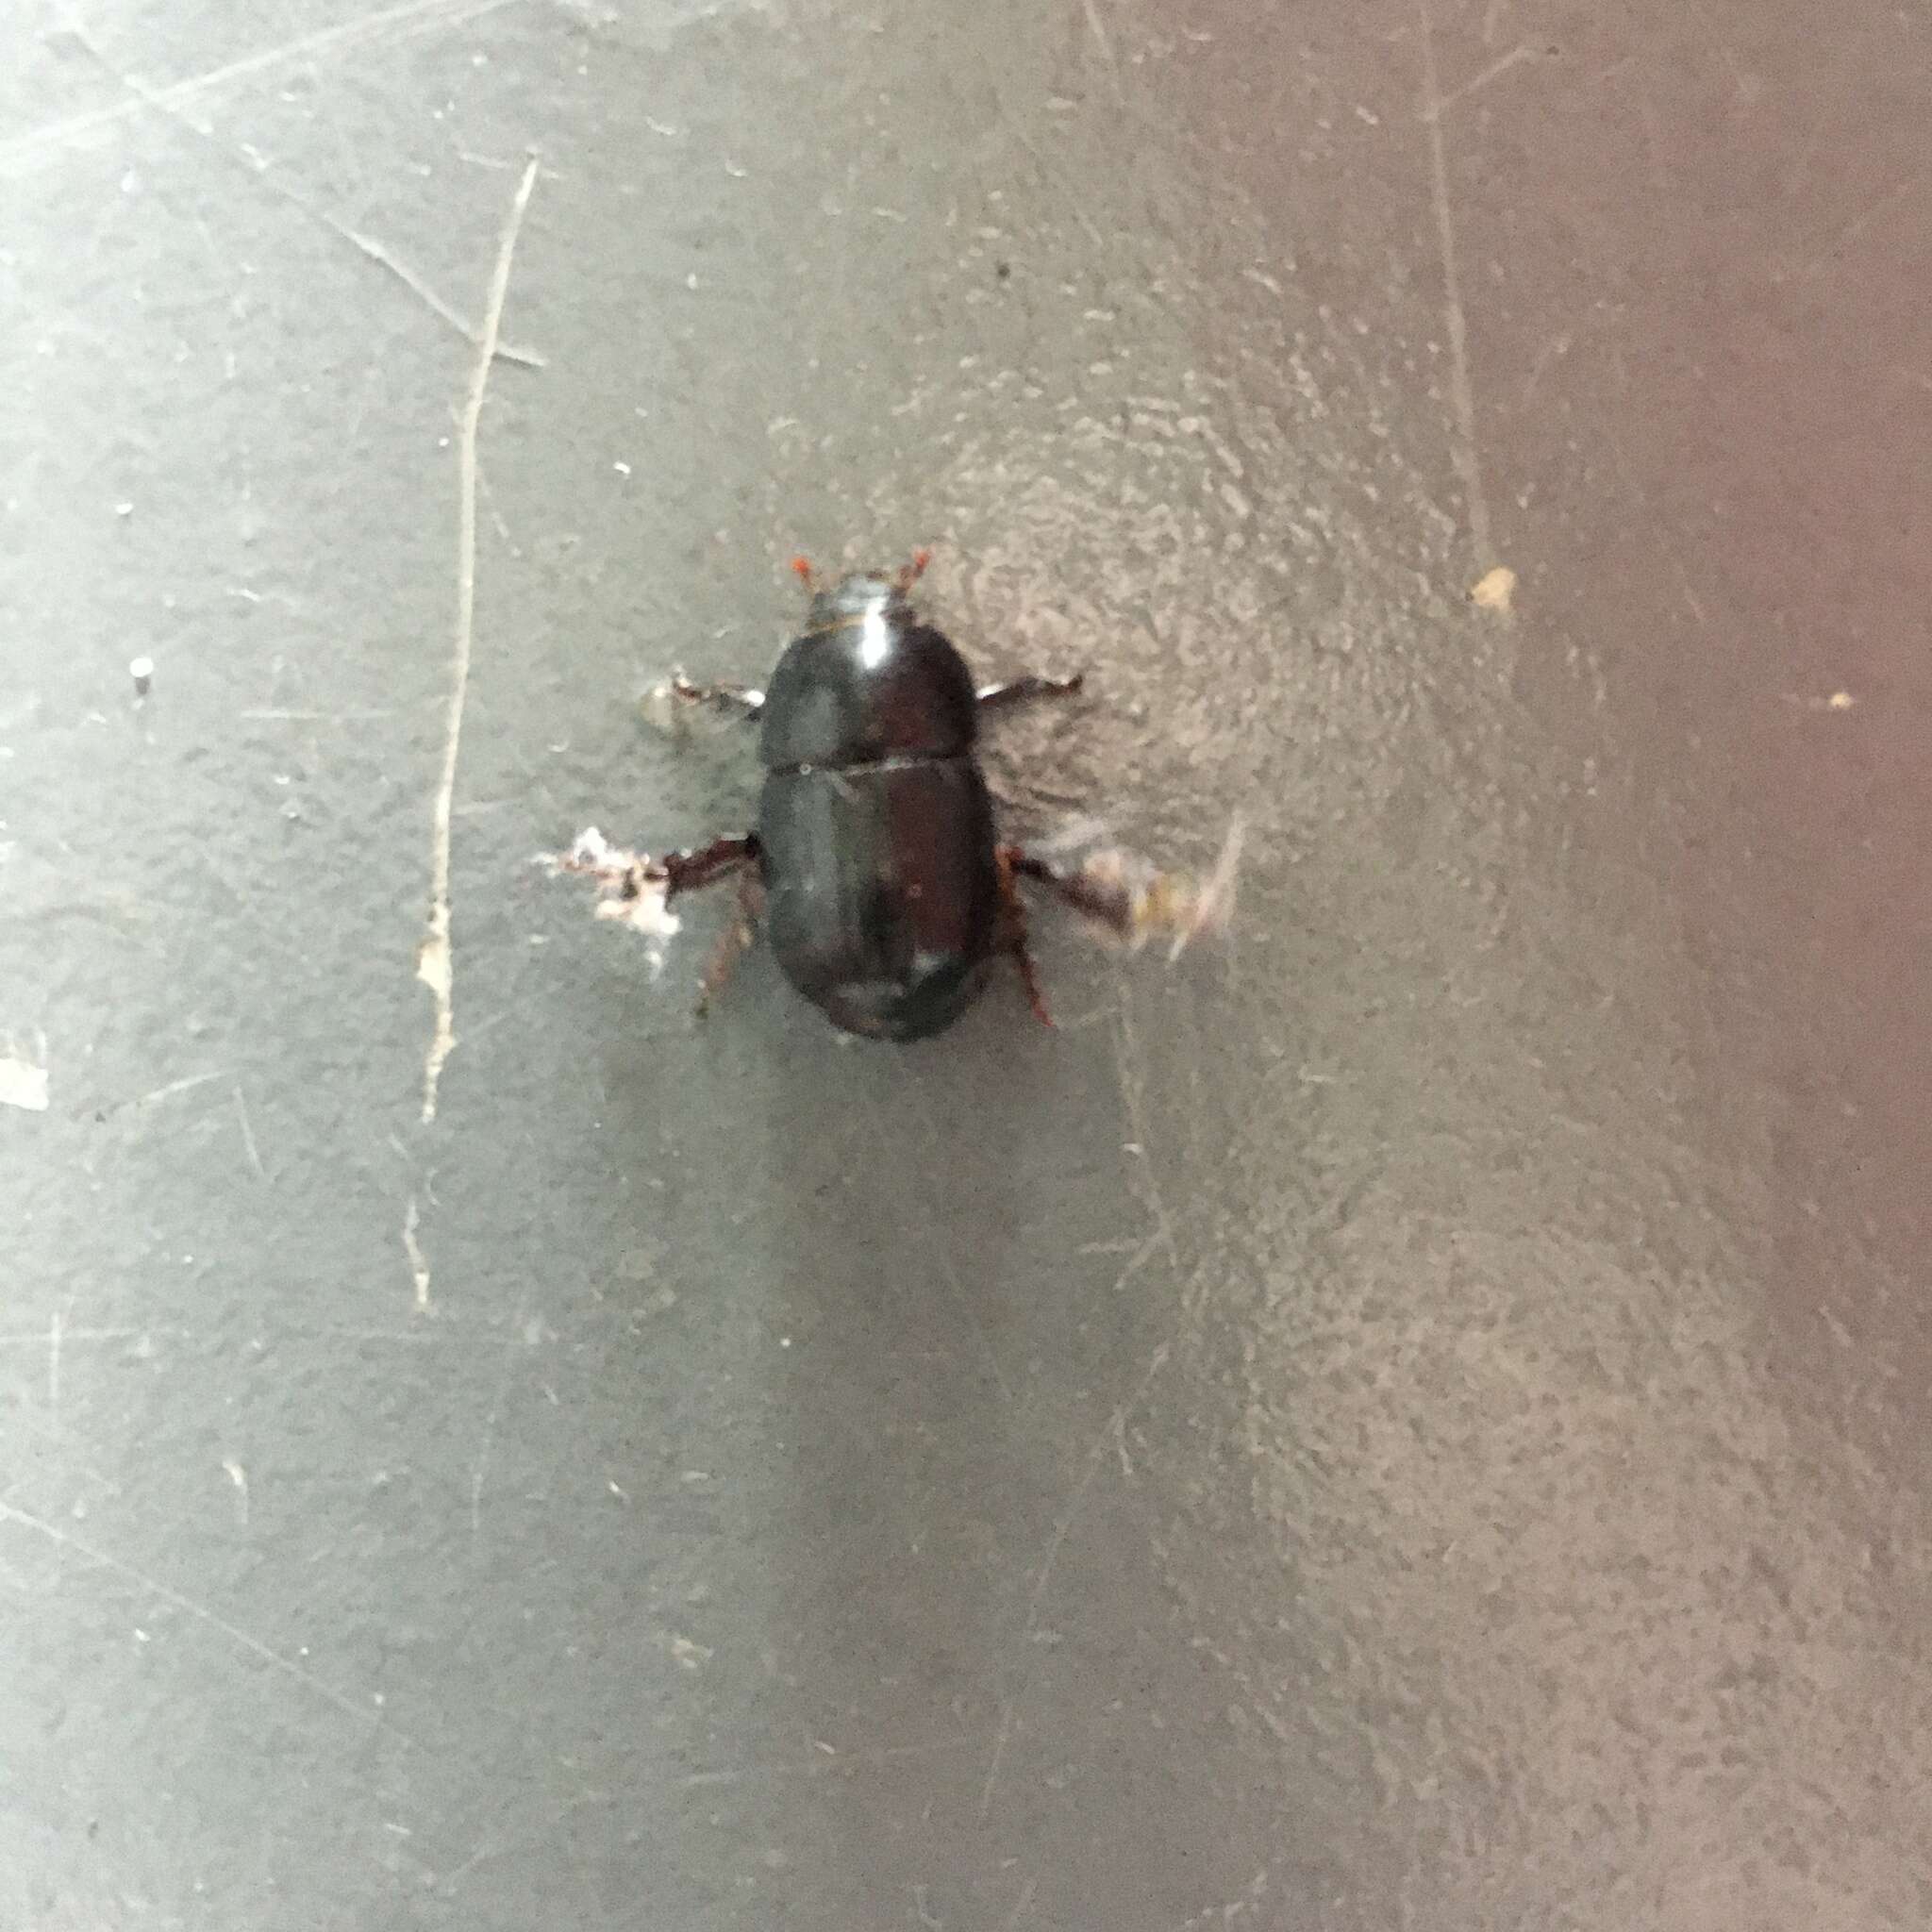 Image of black lawn beetle